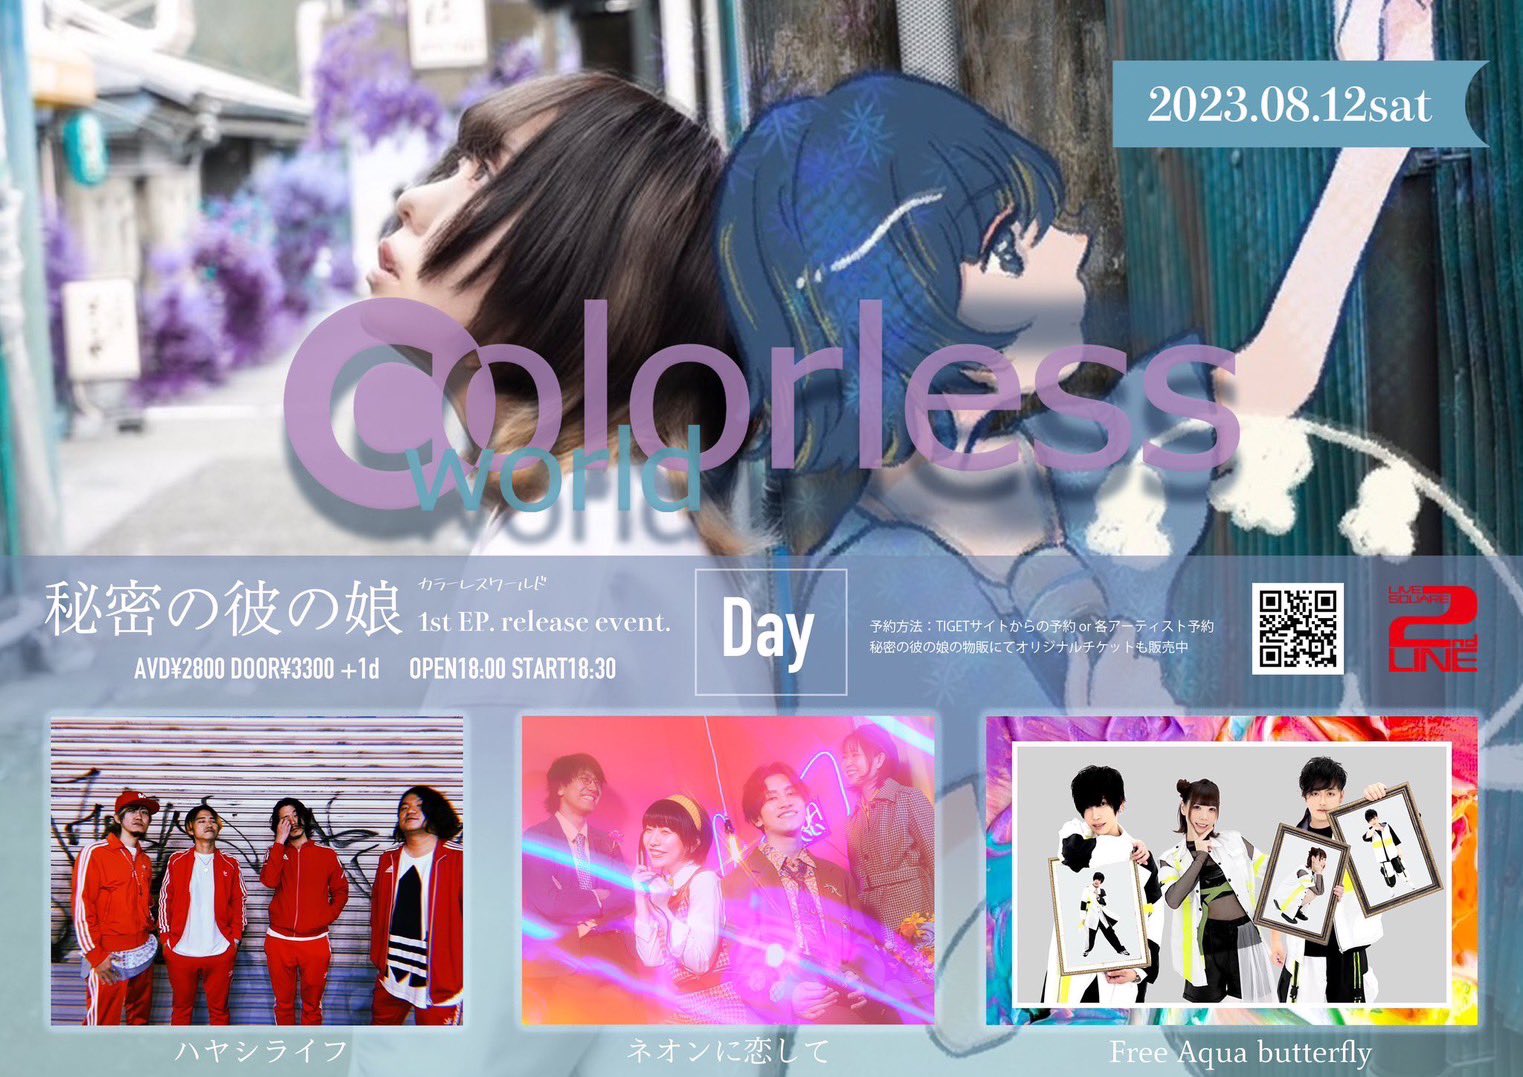 秘密の彼の娘 pre. 「 colorless world 」1st EP release thanks event in OSAKA